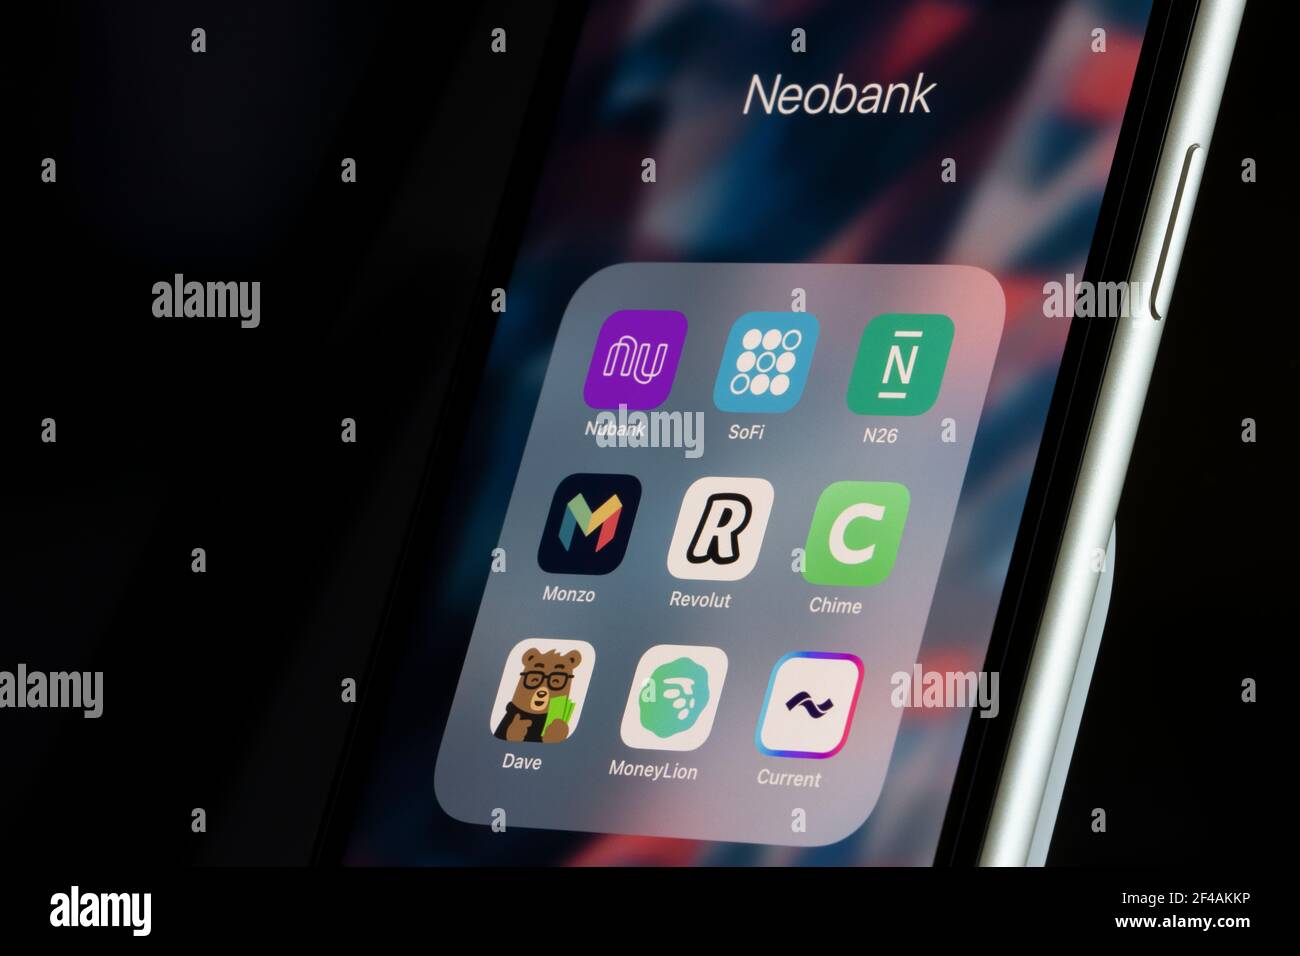 App assortite per neobanche top sono visibili su un iPhone - Nubank, SoFi, N26, Monzo, Revolut, Chingle, Dave, MoneyLion e Current. Un neobank funziona ... Foto Stock